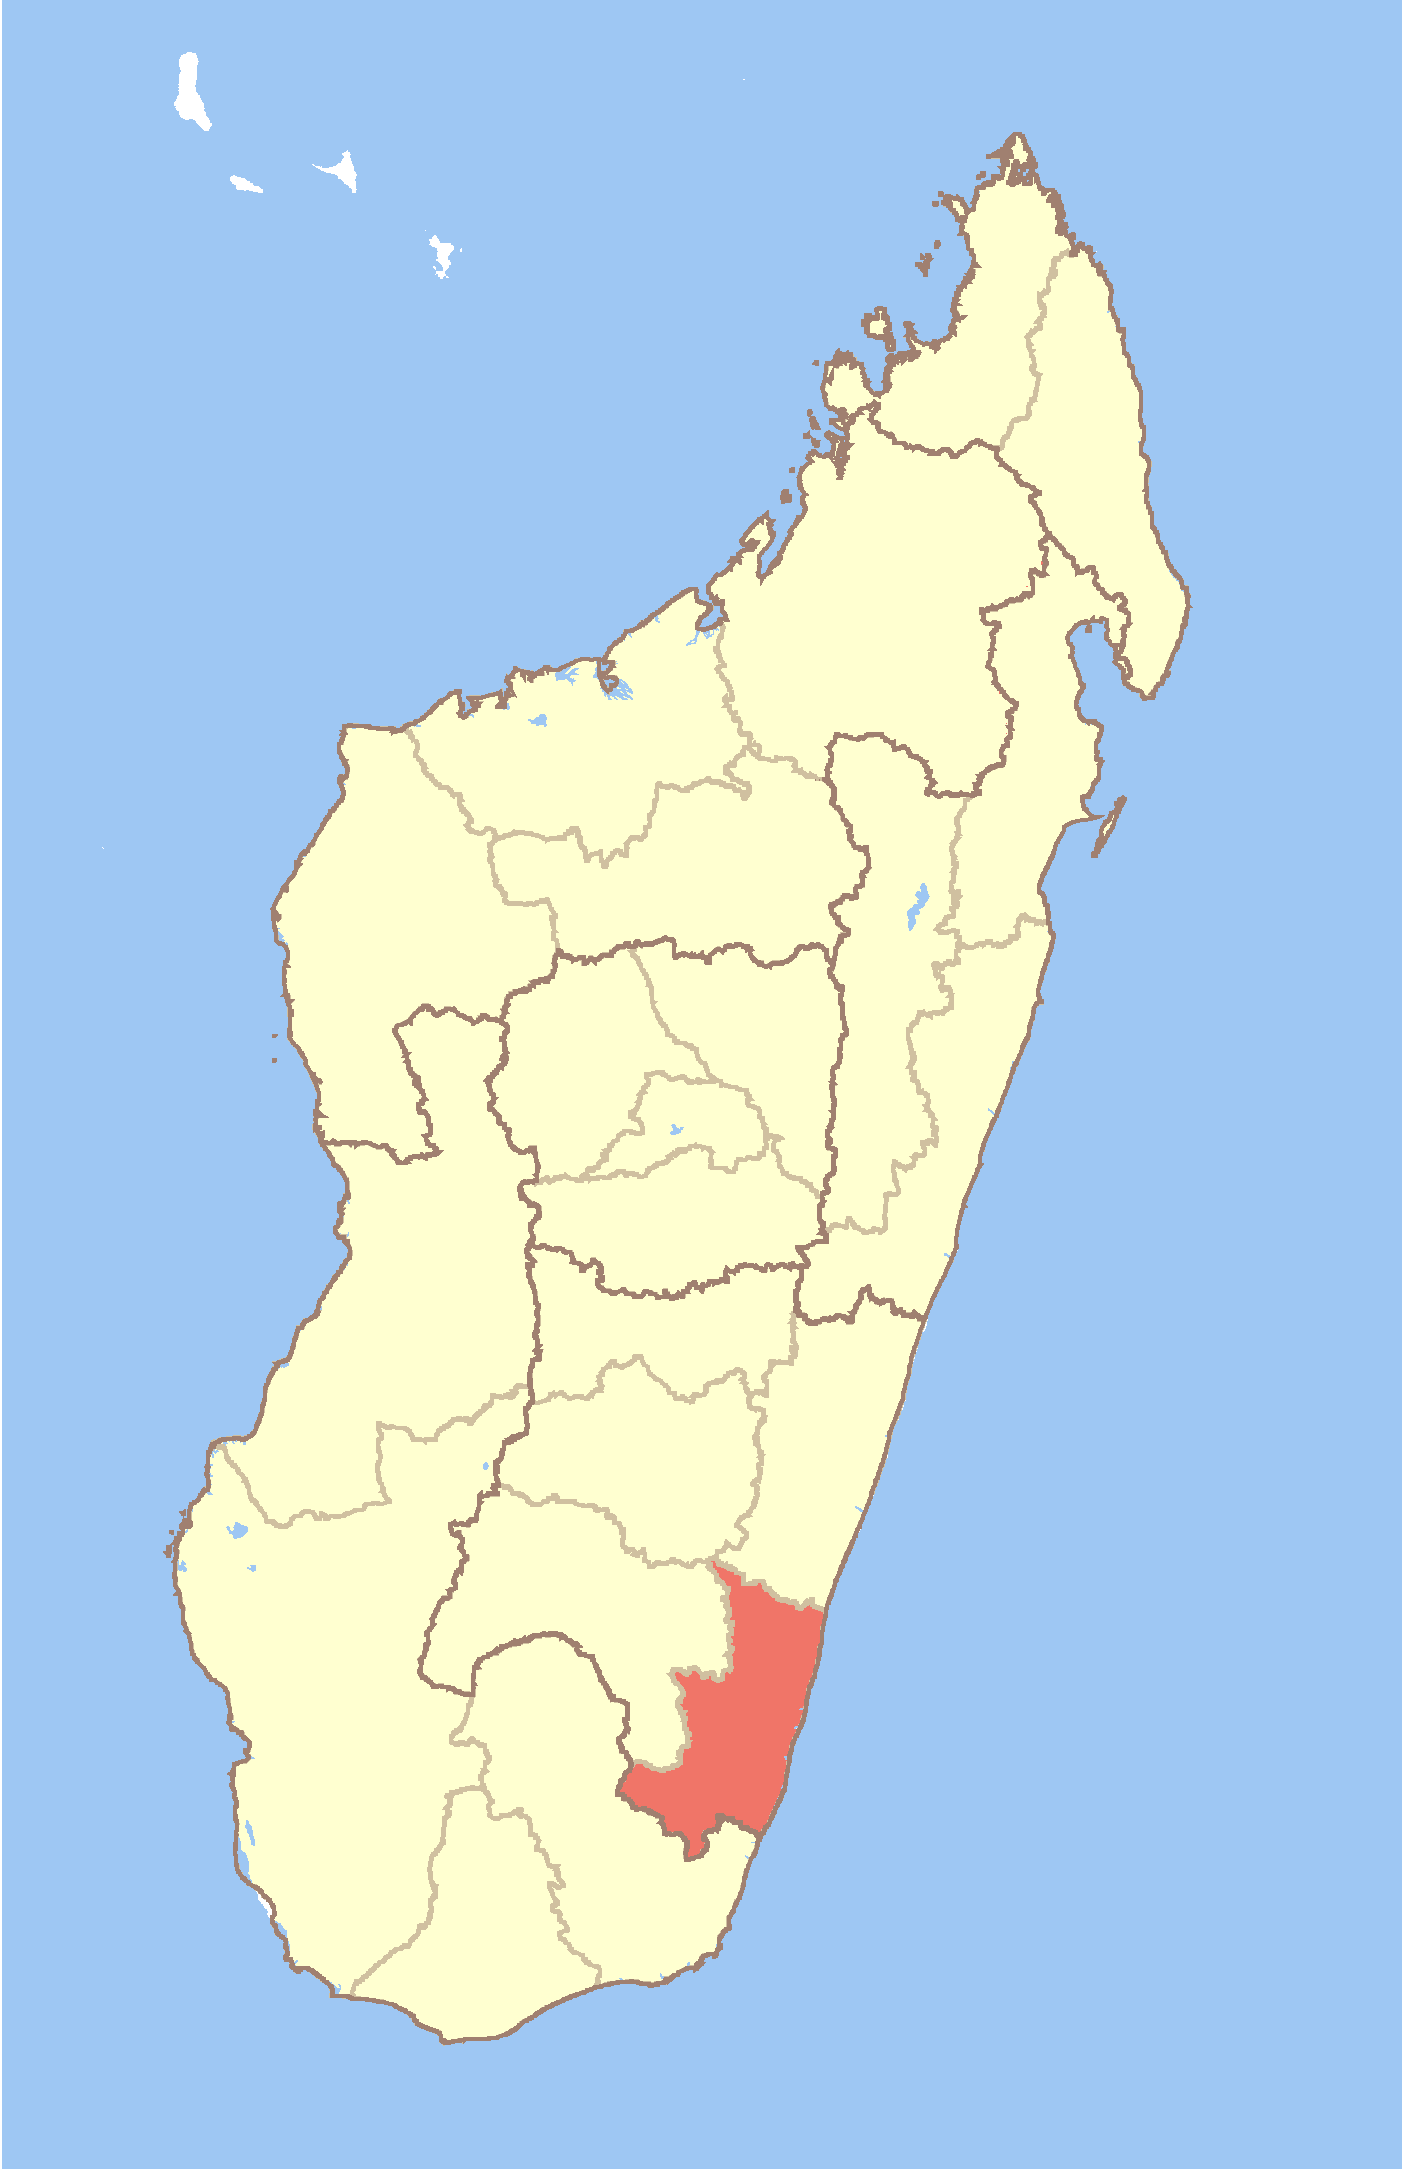 Atsimo Atsinanana Region of Madagascar